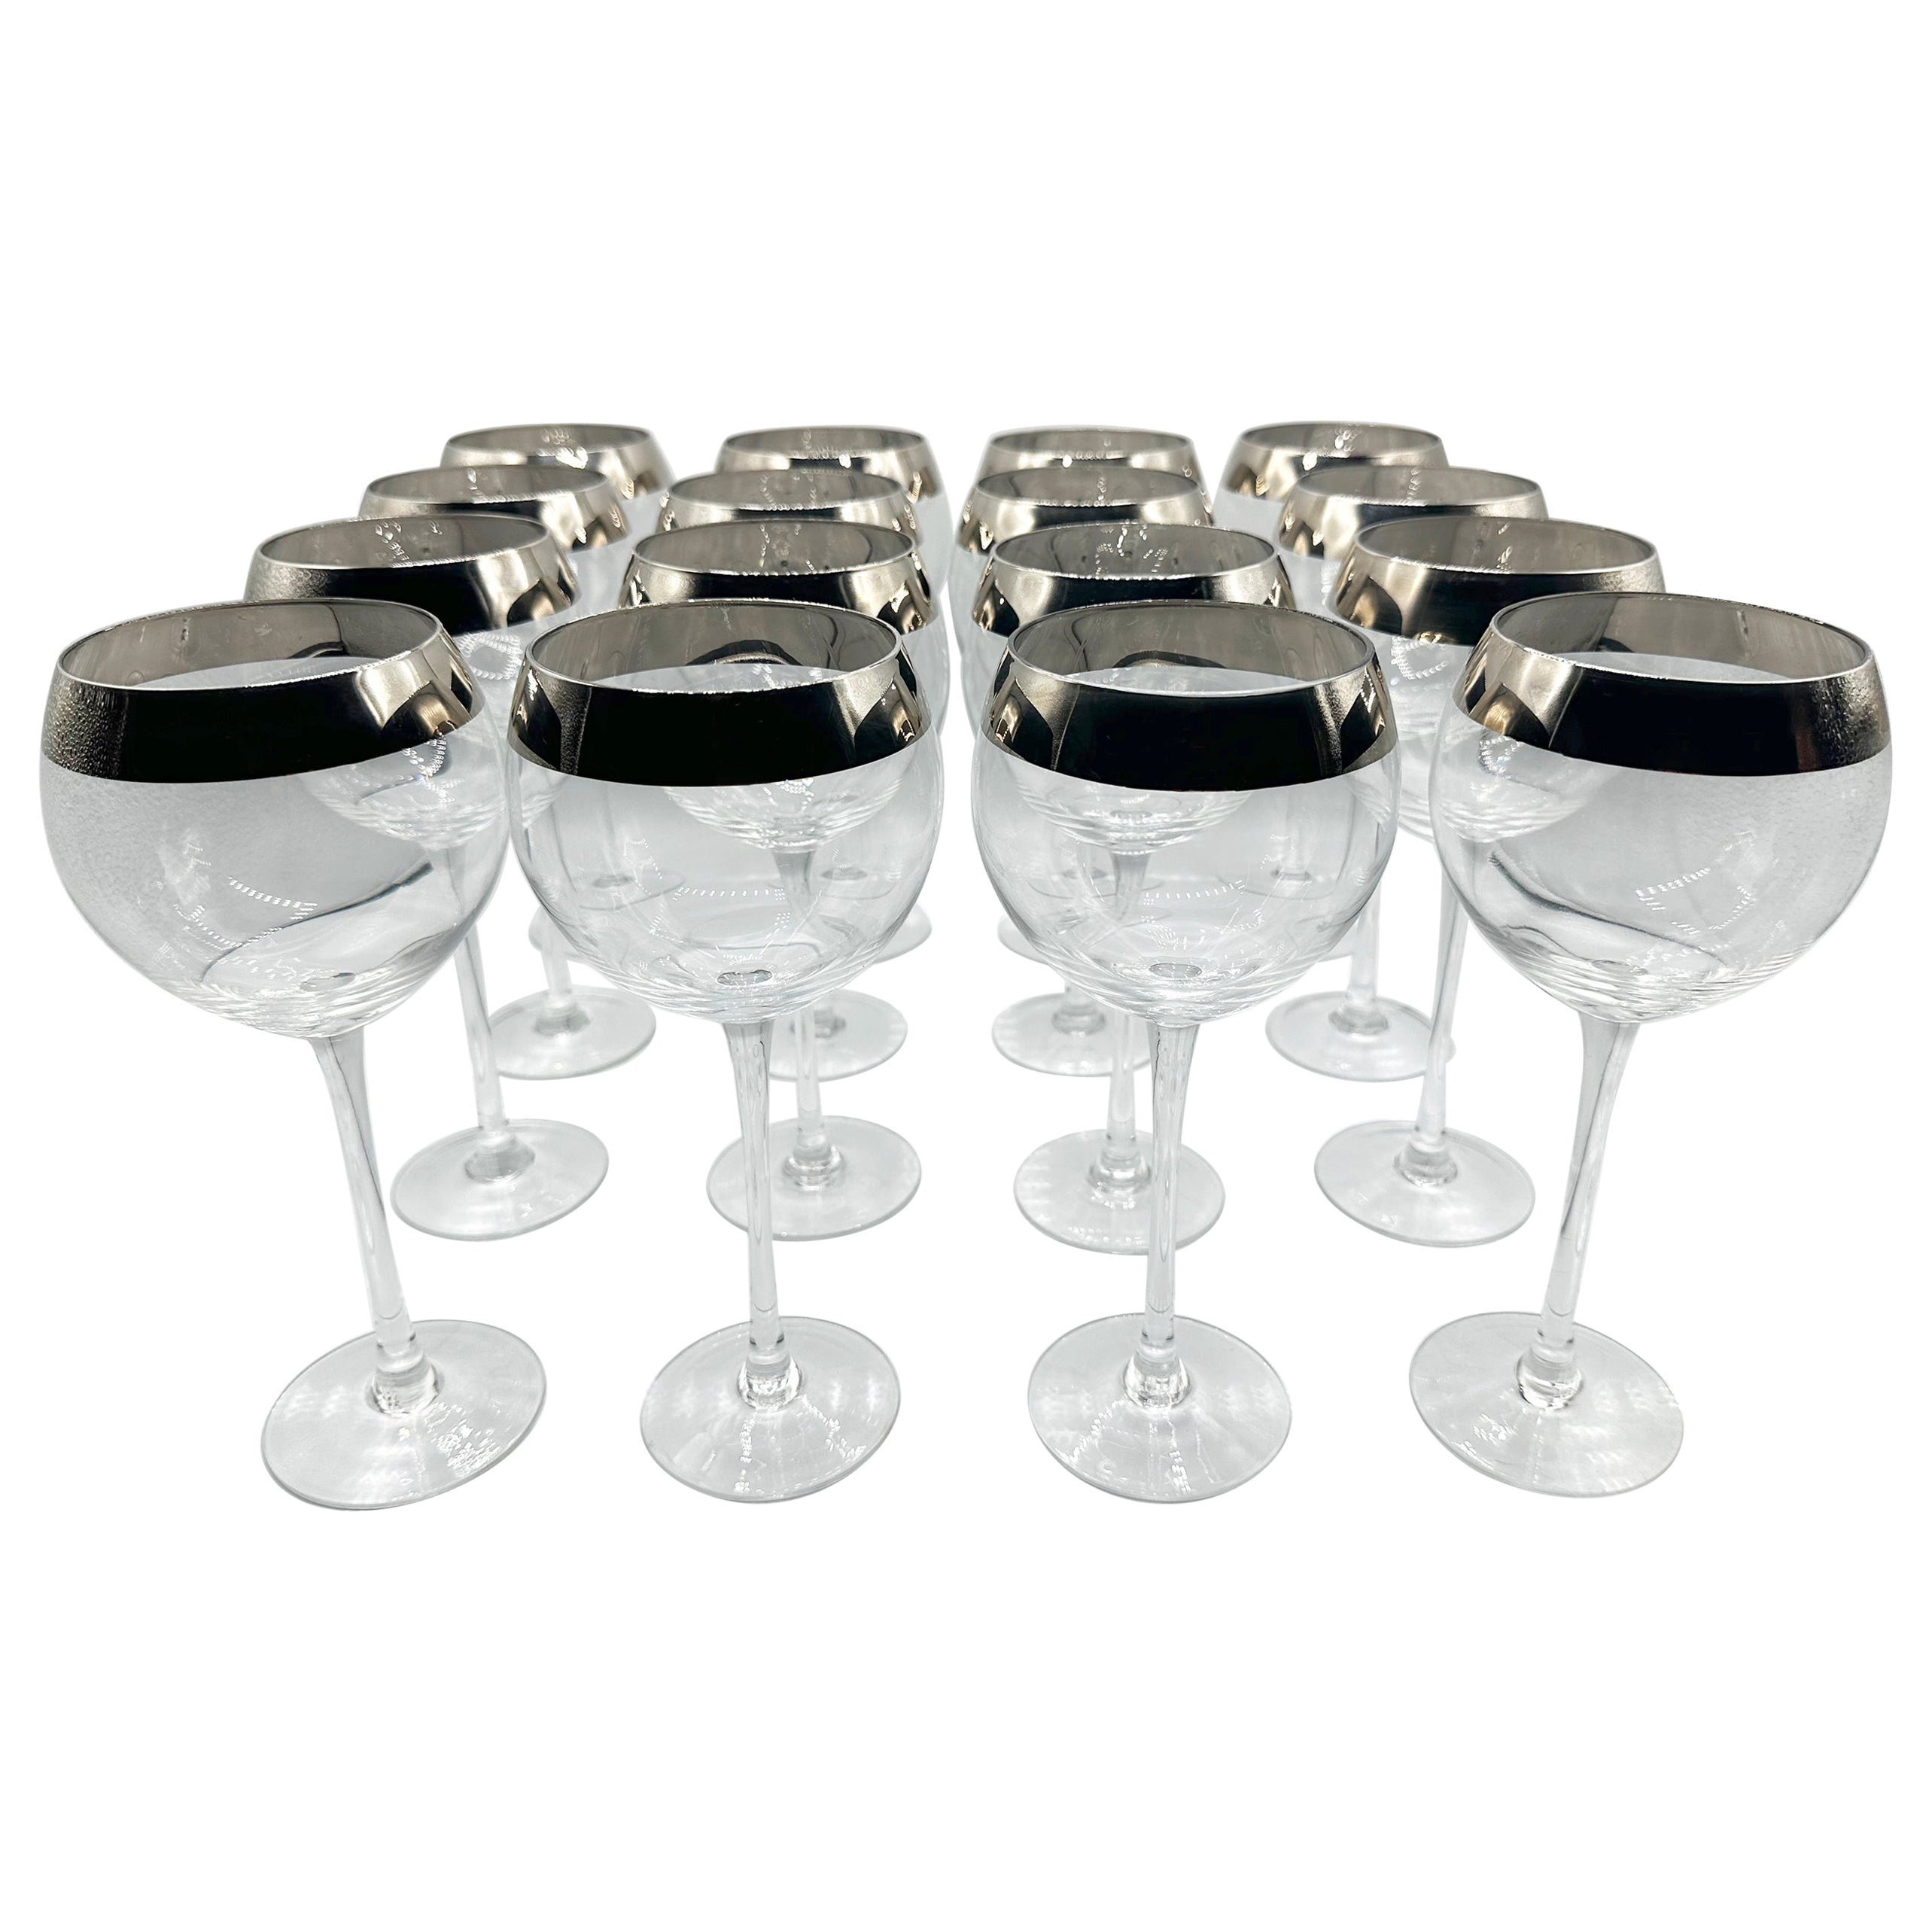 Dorothy Thorpe Platinum Rimmed Wine Glasses set of 16 For Sale